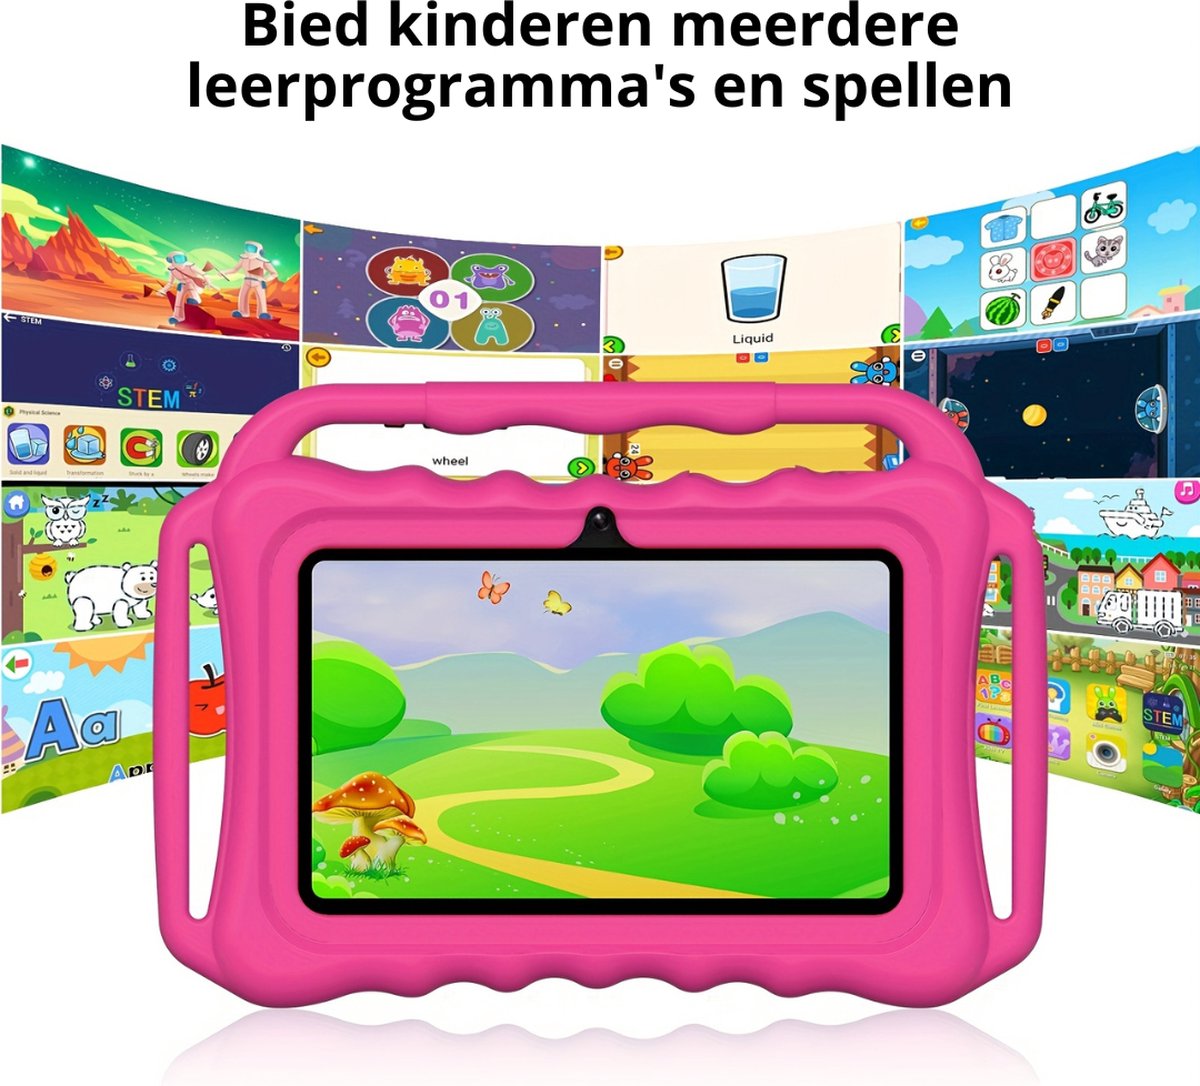 Livano Kindertablet - Kinder Computer - Inclusief Gratis Beschermhoes - Vanaf 3 Jaar - 5 Jaar - 32GB - 7 Inch - Donkerblauw